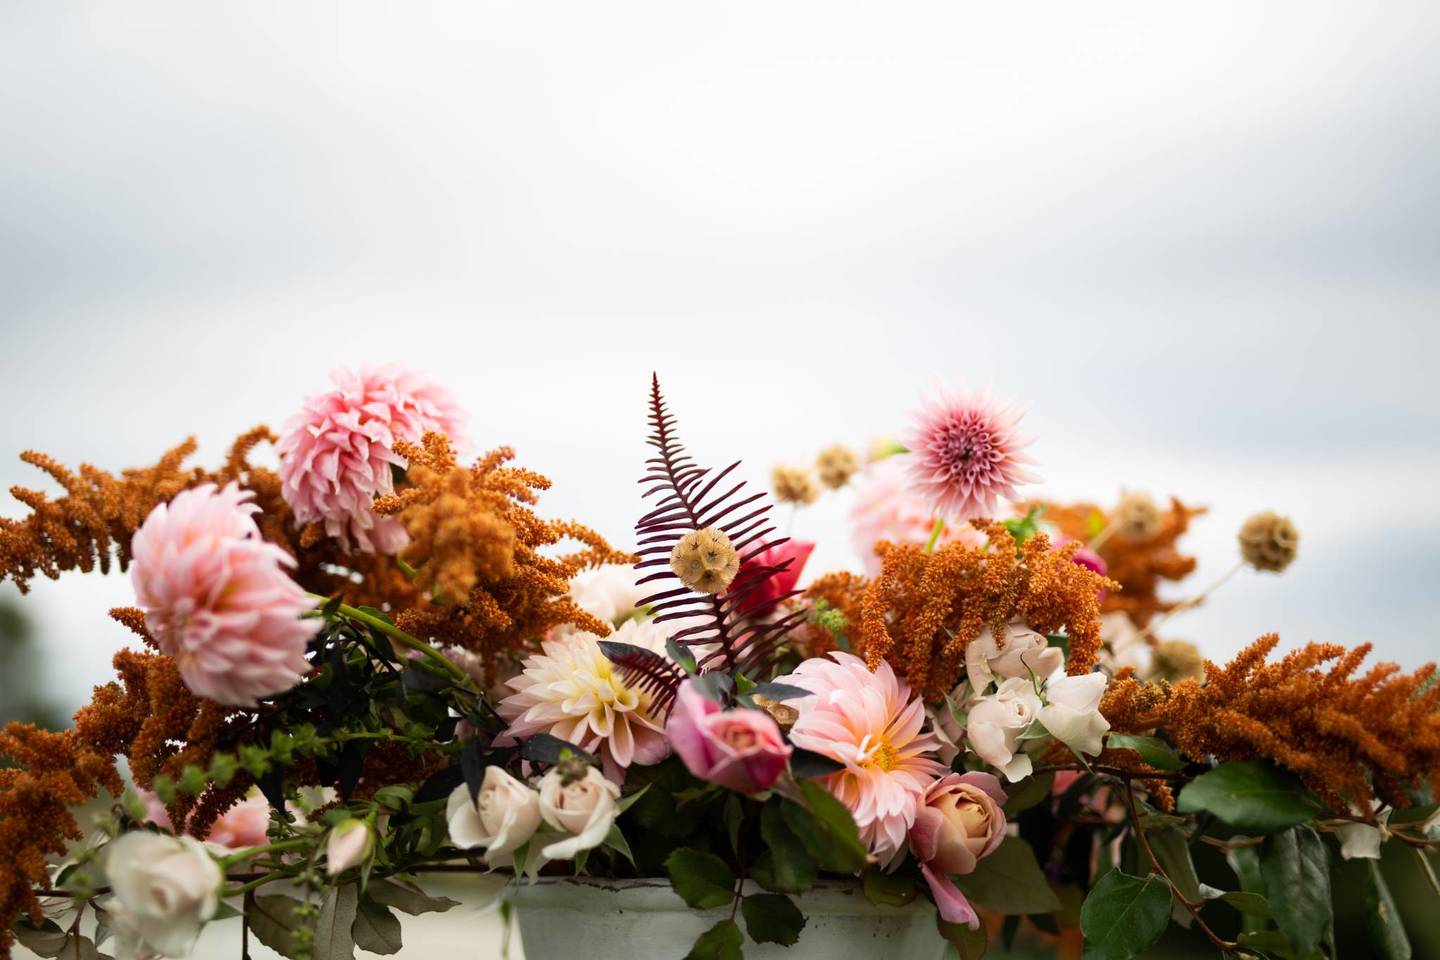 Beyond Roses and Peonies: Choosing Creative Wedding Florals